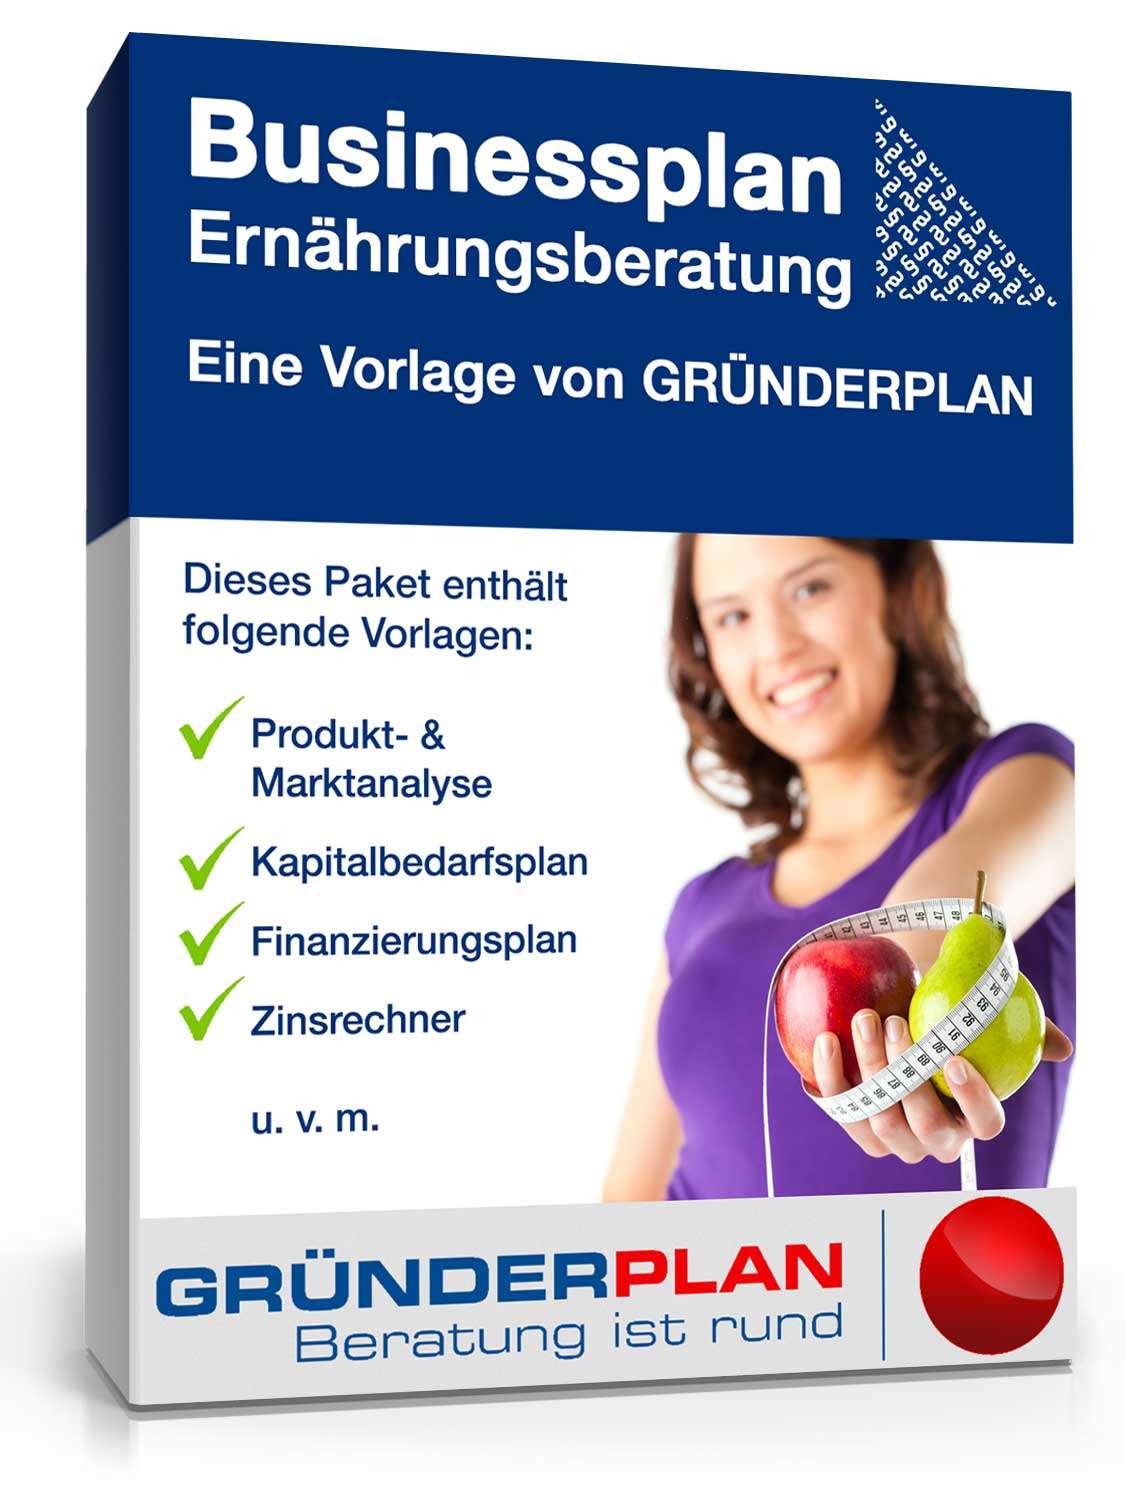 Hauptbild des Produkts: Businessplan Ernährungsberatung von Gründerplan